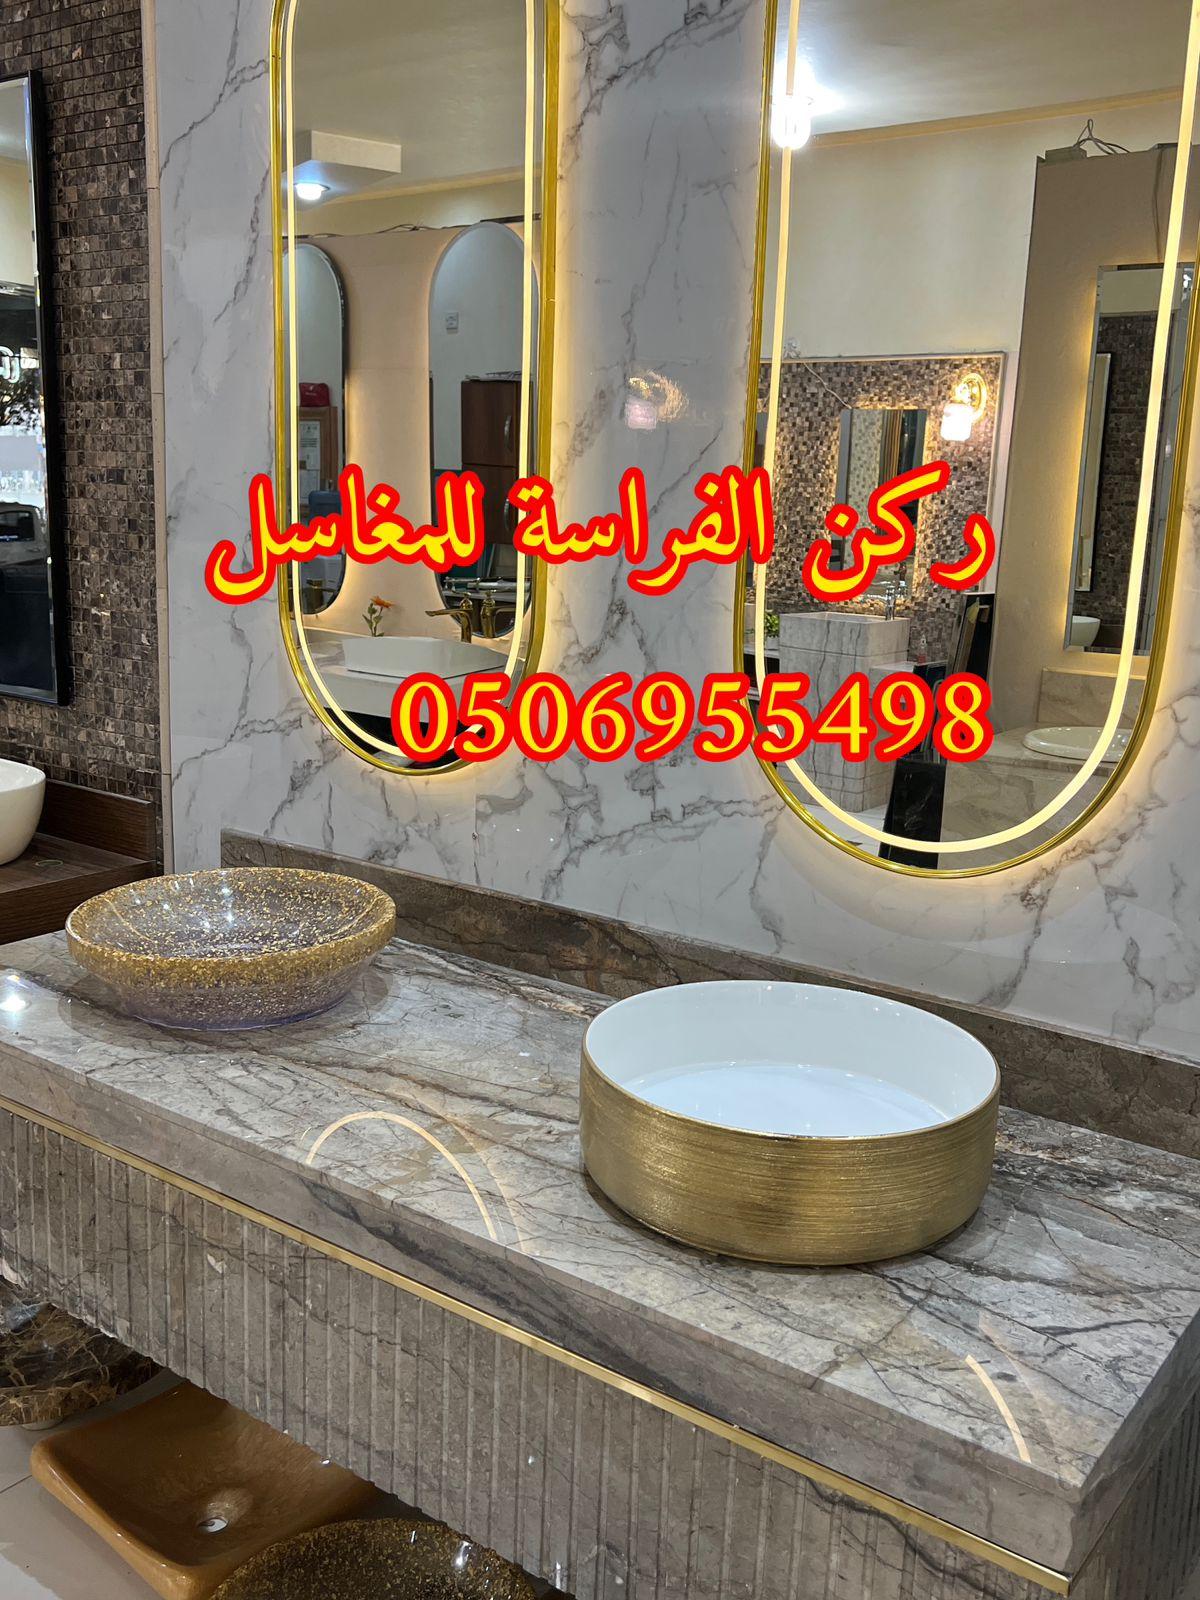 الرياض - تفصيل احواض مغاسل رخام في الرياض,0506955498 919516311